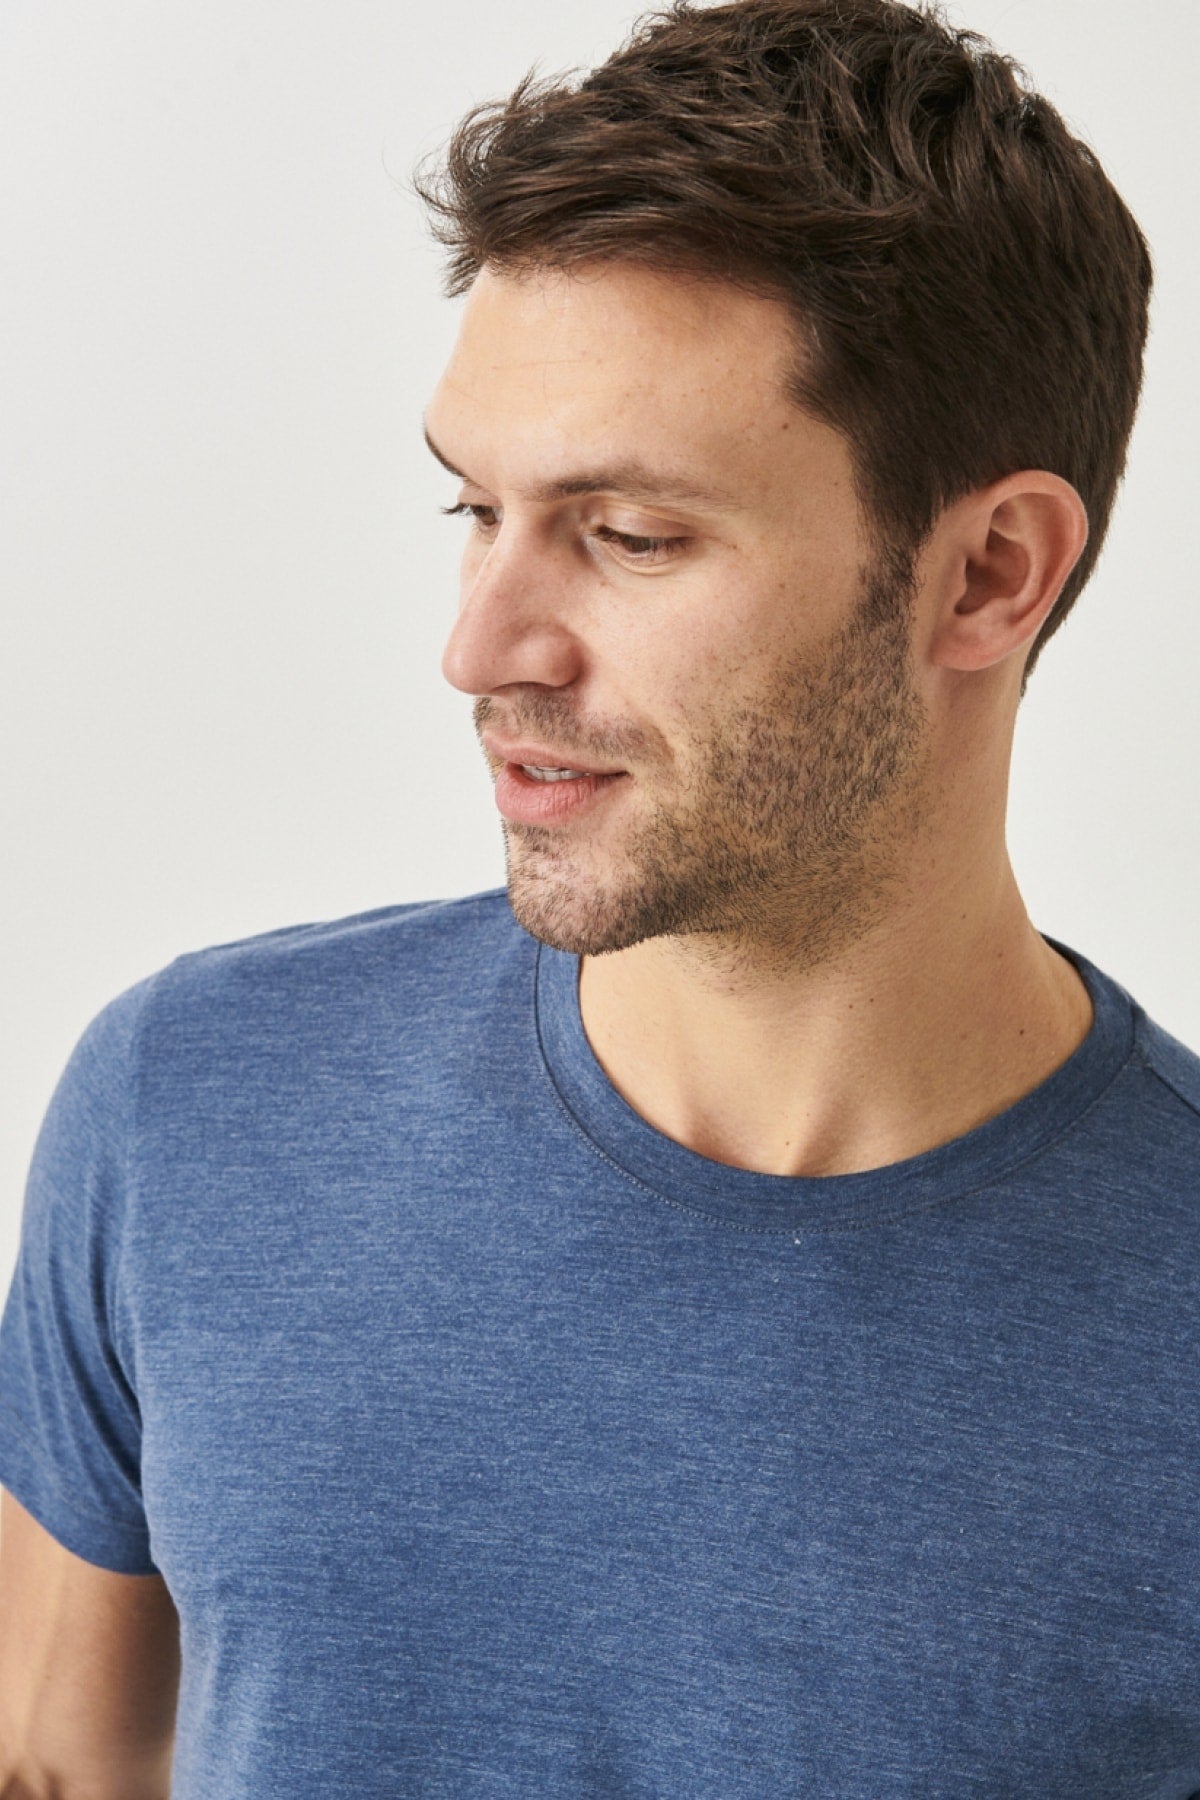  Мужская футболка цвета индиго меланж из хлопка Slim Fit Slim Fit с круглым вырезом и короткими рукавами